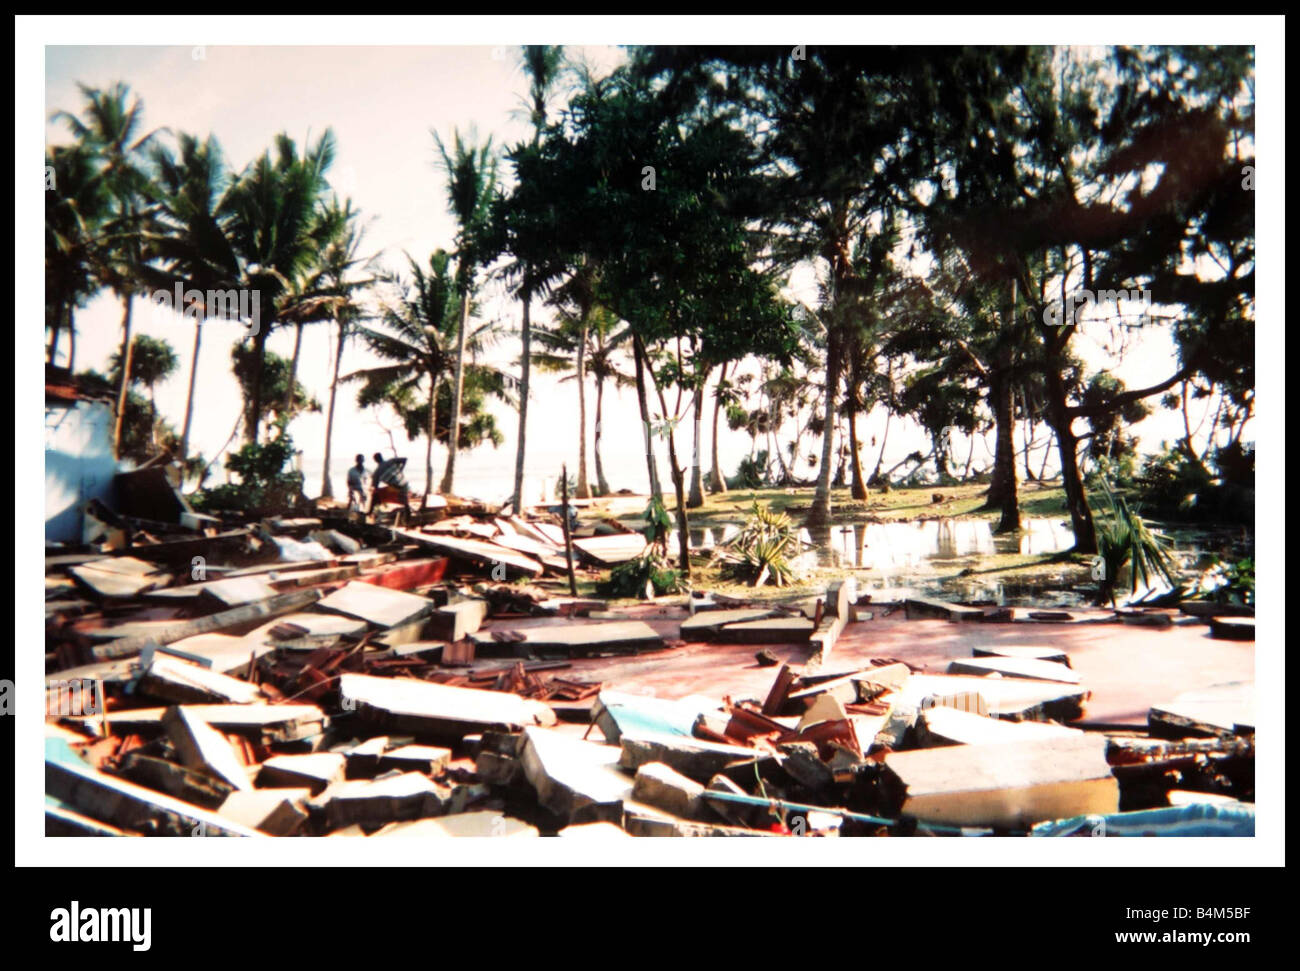 Natürliche Katastrophe Tsunami in Sri Lanka Dezember 2004 das Dorf Midigama die Riesenwelle, die zeigen, dass die Überreste eines Gästehauses 20 Briten waren betroffen war wohnten Mirrorpix Stockfoto